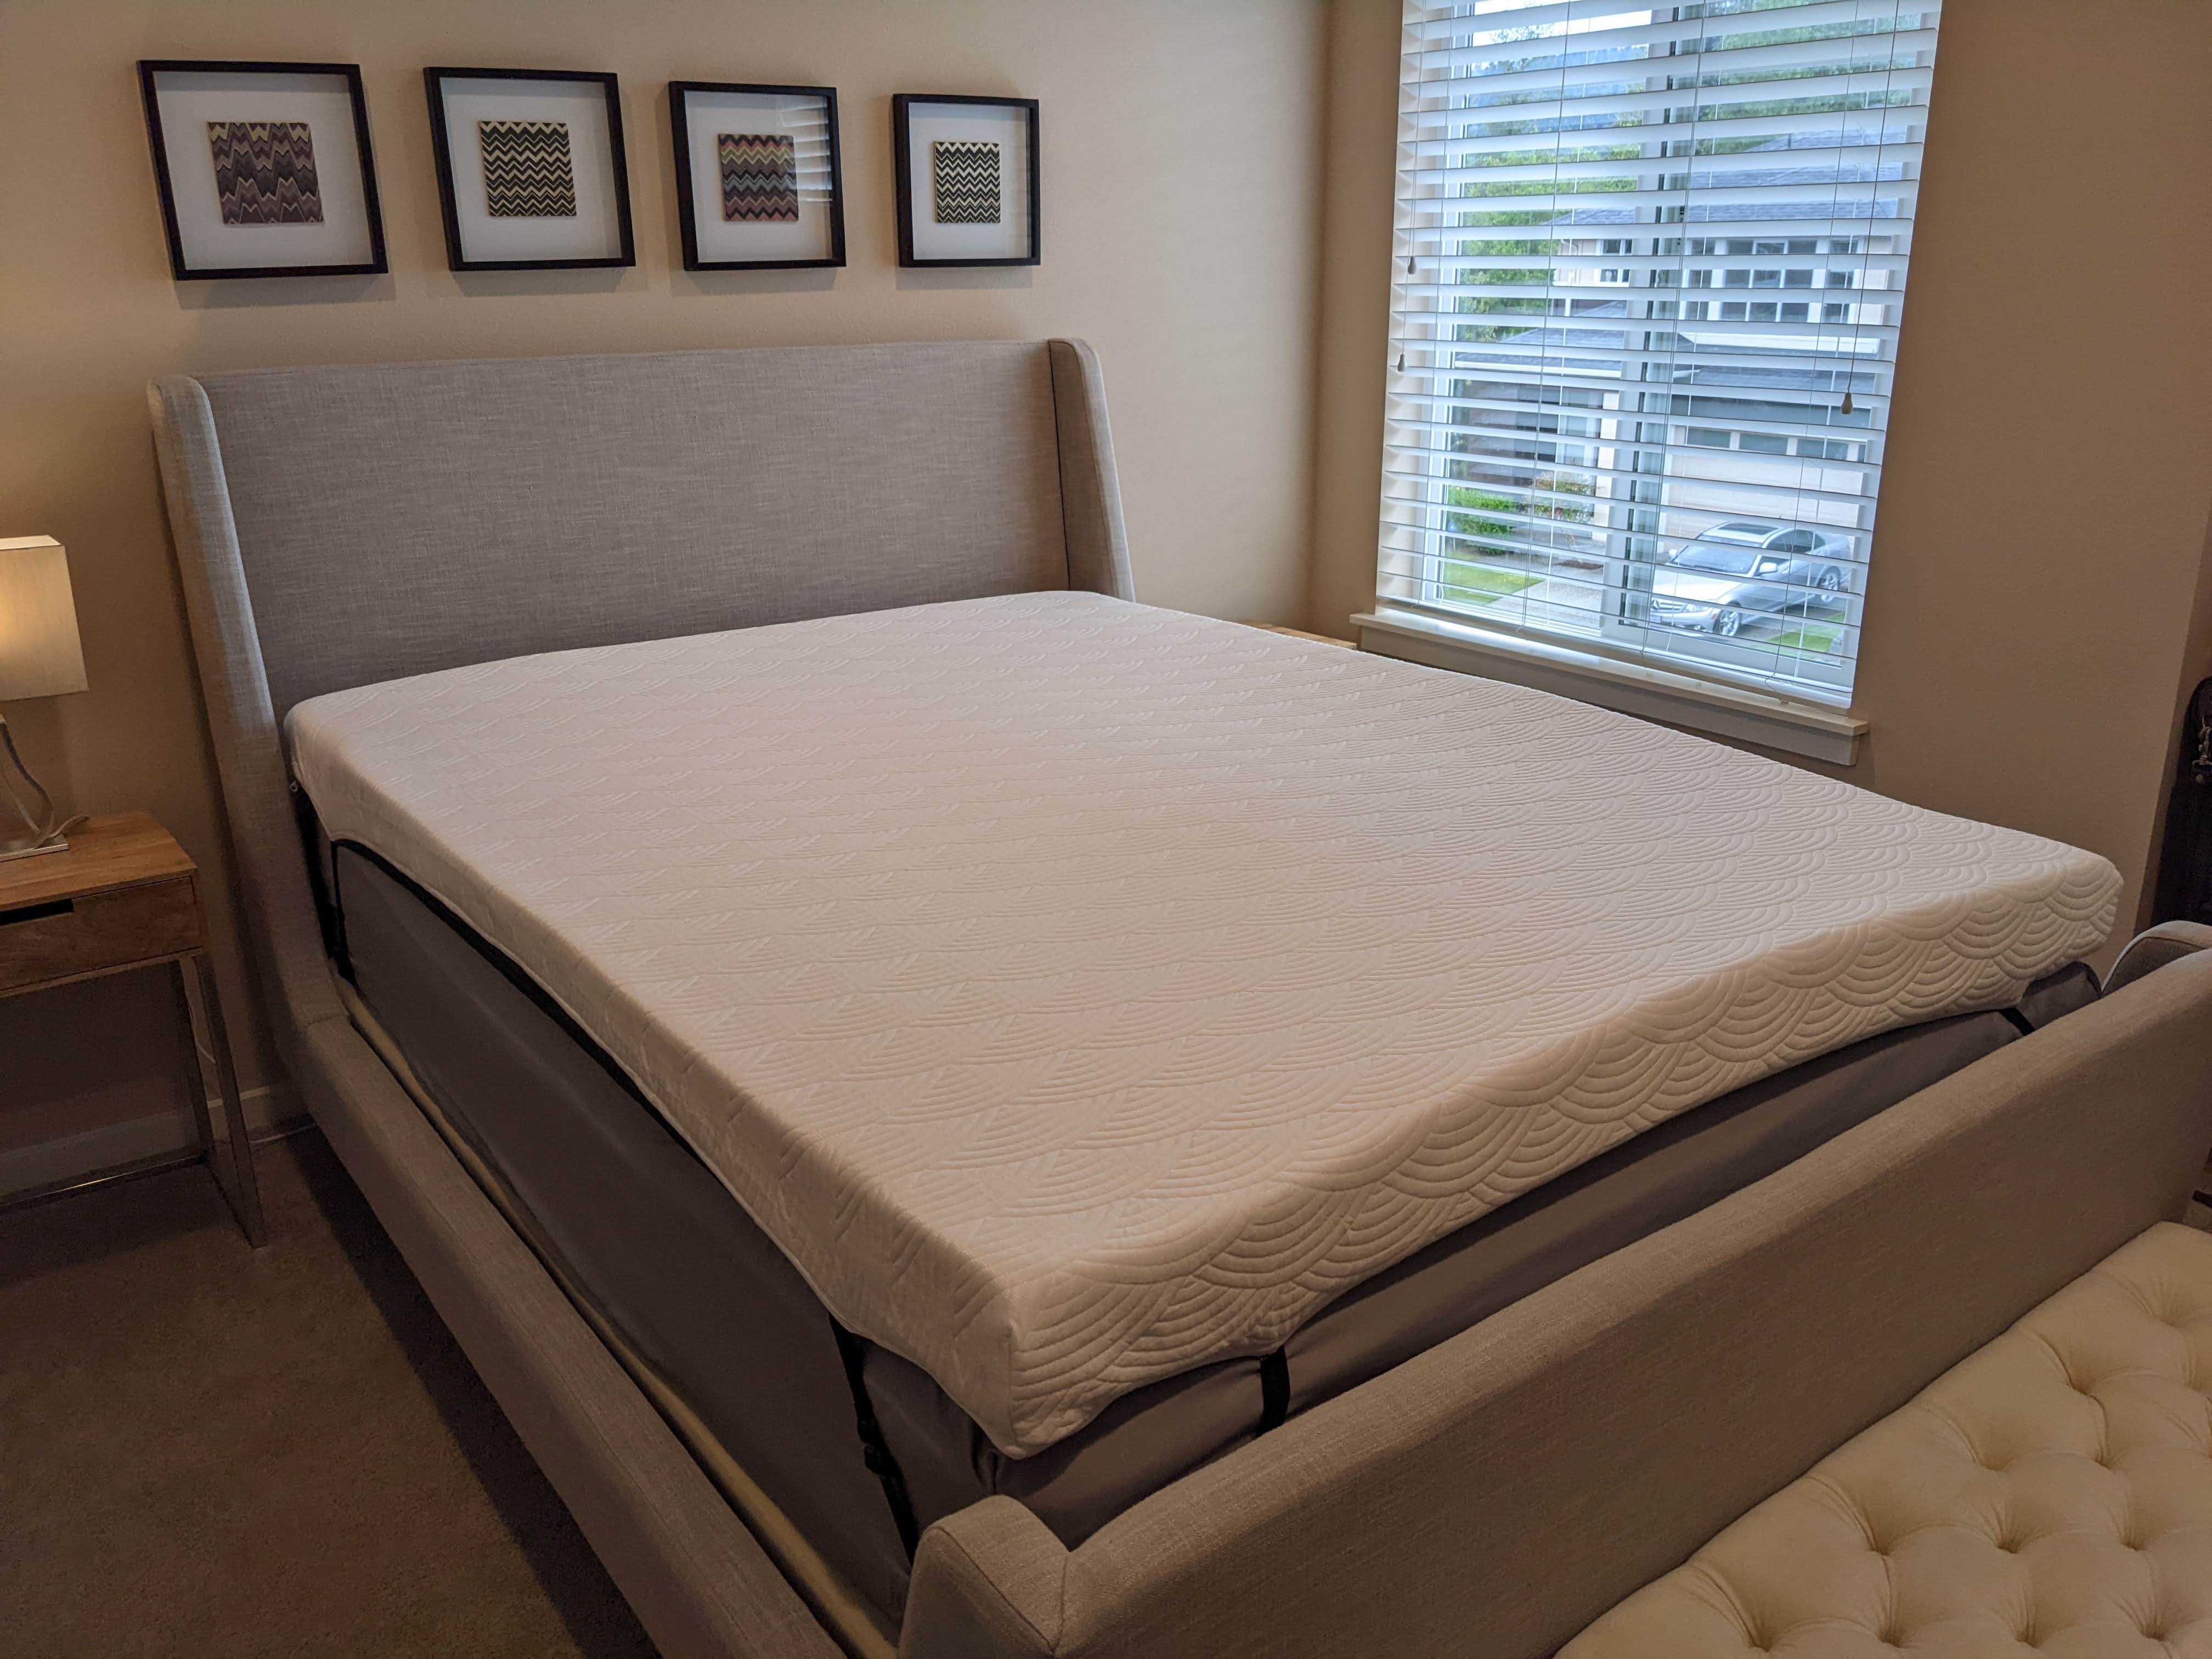 viscosoft 4 inch mattress topper reviews